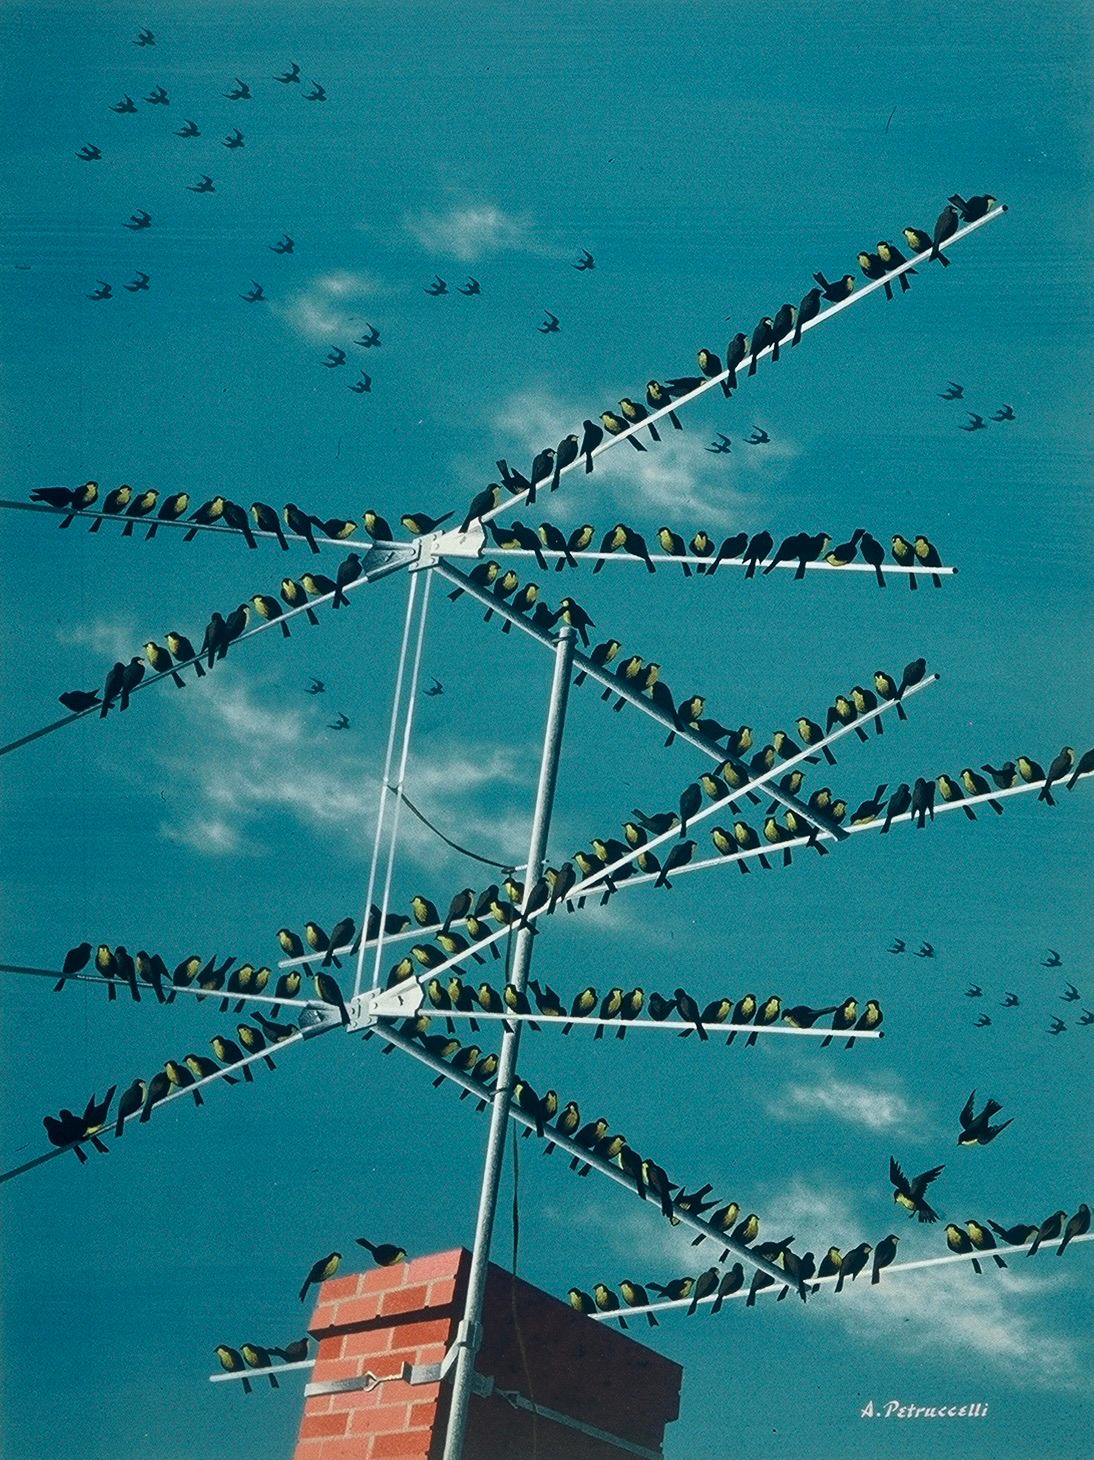 Antonio Petruccelli Landscape Painting – „Antenna Birds“, New Yorker Mag-Deckel, Proposal, amerikanische Szene, Moderne der Mitte des Jahrhunderts